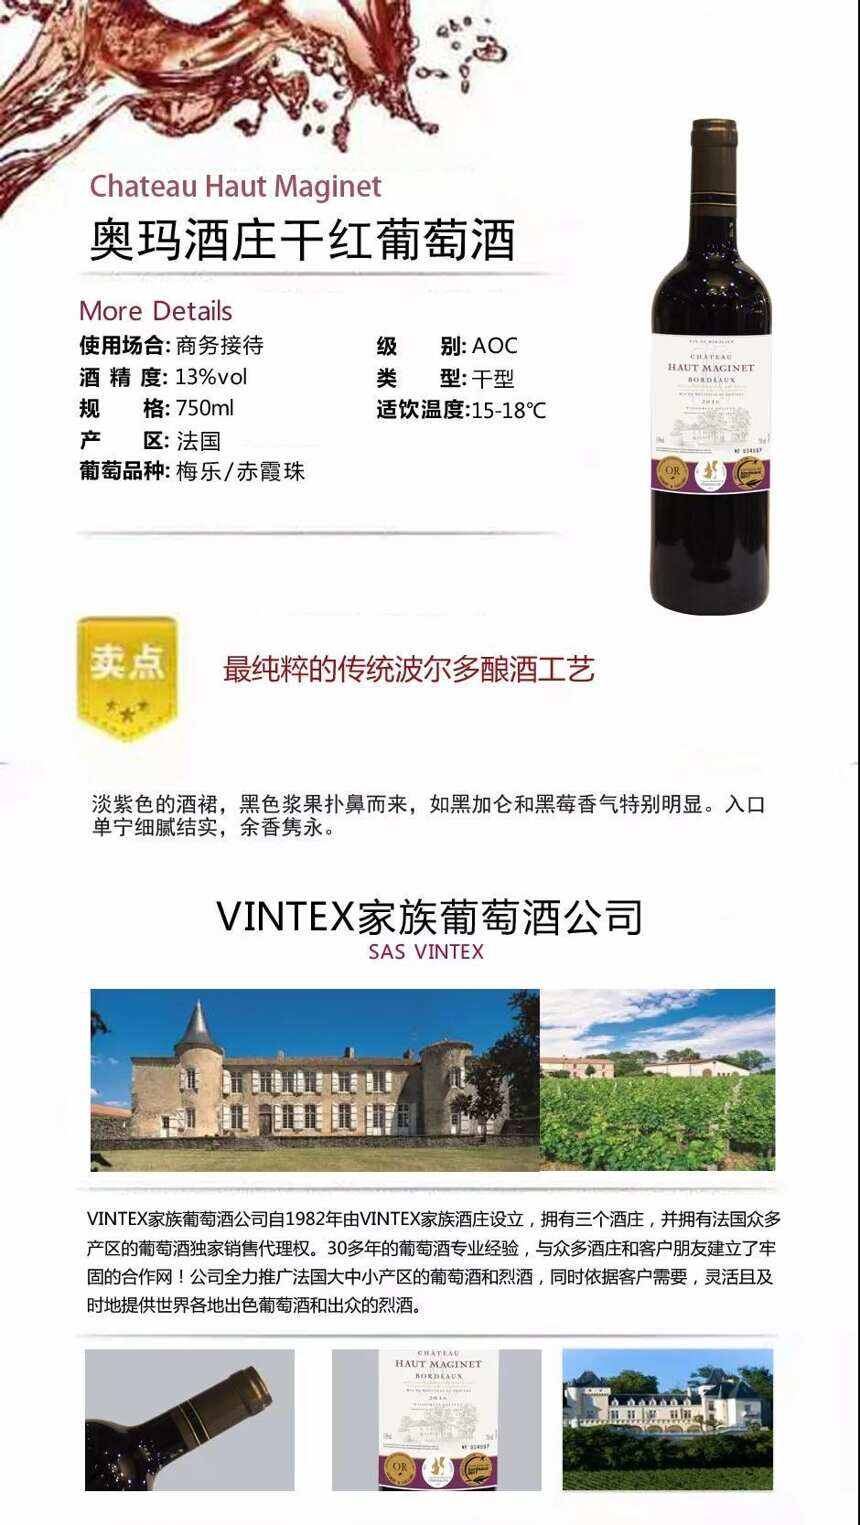 法国VLVG家族葡萄酒公司 用魅力和品质为自己代言